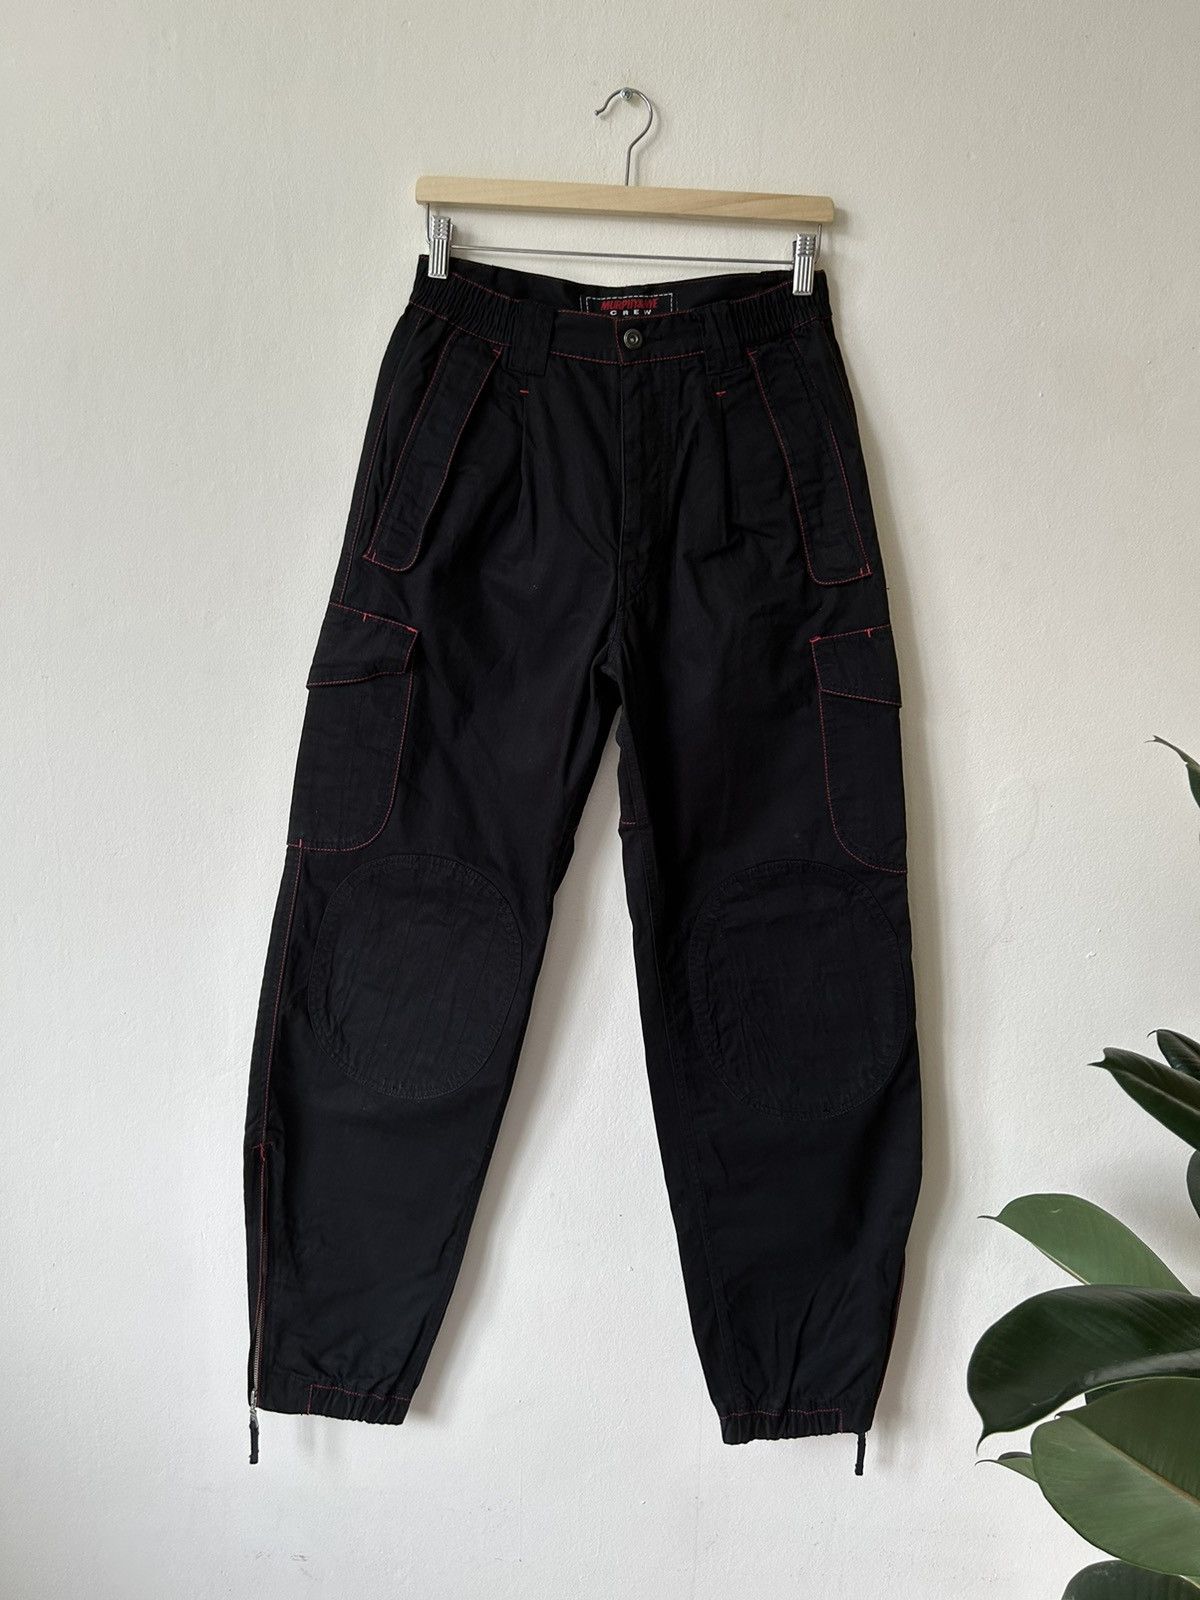 Streetwear Murphy & Nye Akite Pants Size 32 | Grailed